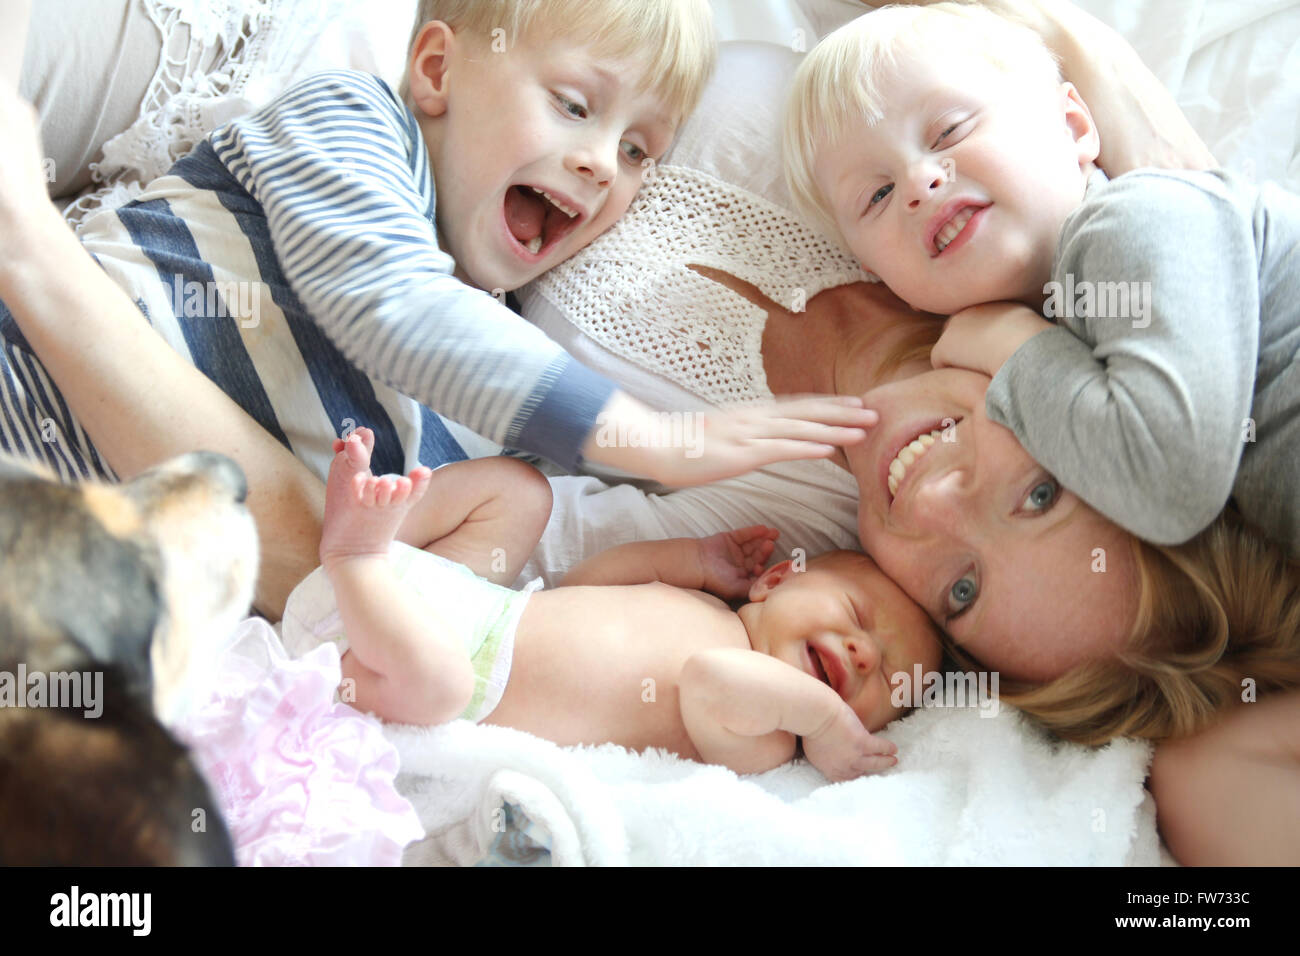 Eine glückliche junge Mutter ist auf dem Bett mit ihren drei kleinen Kindern, zwei wilde Jungs und ein neugeborenes Mädchen, als ihren Hund legen. Stockfoto